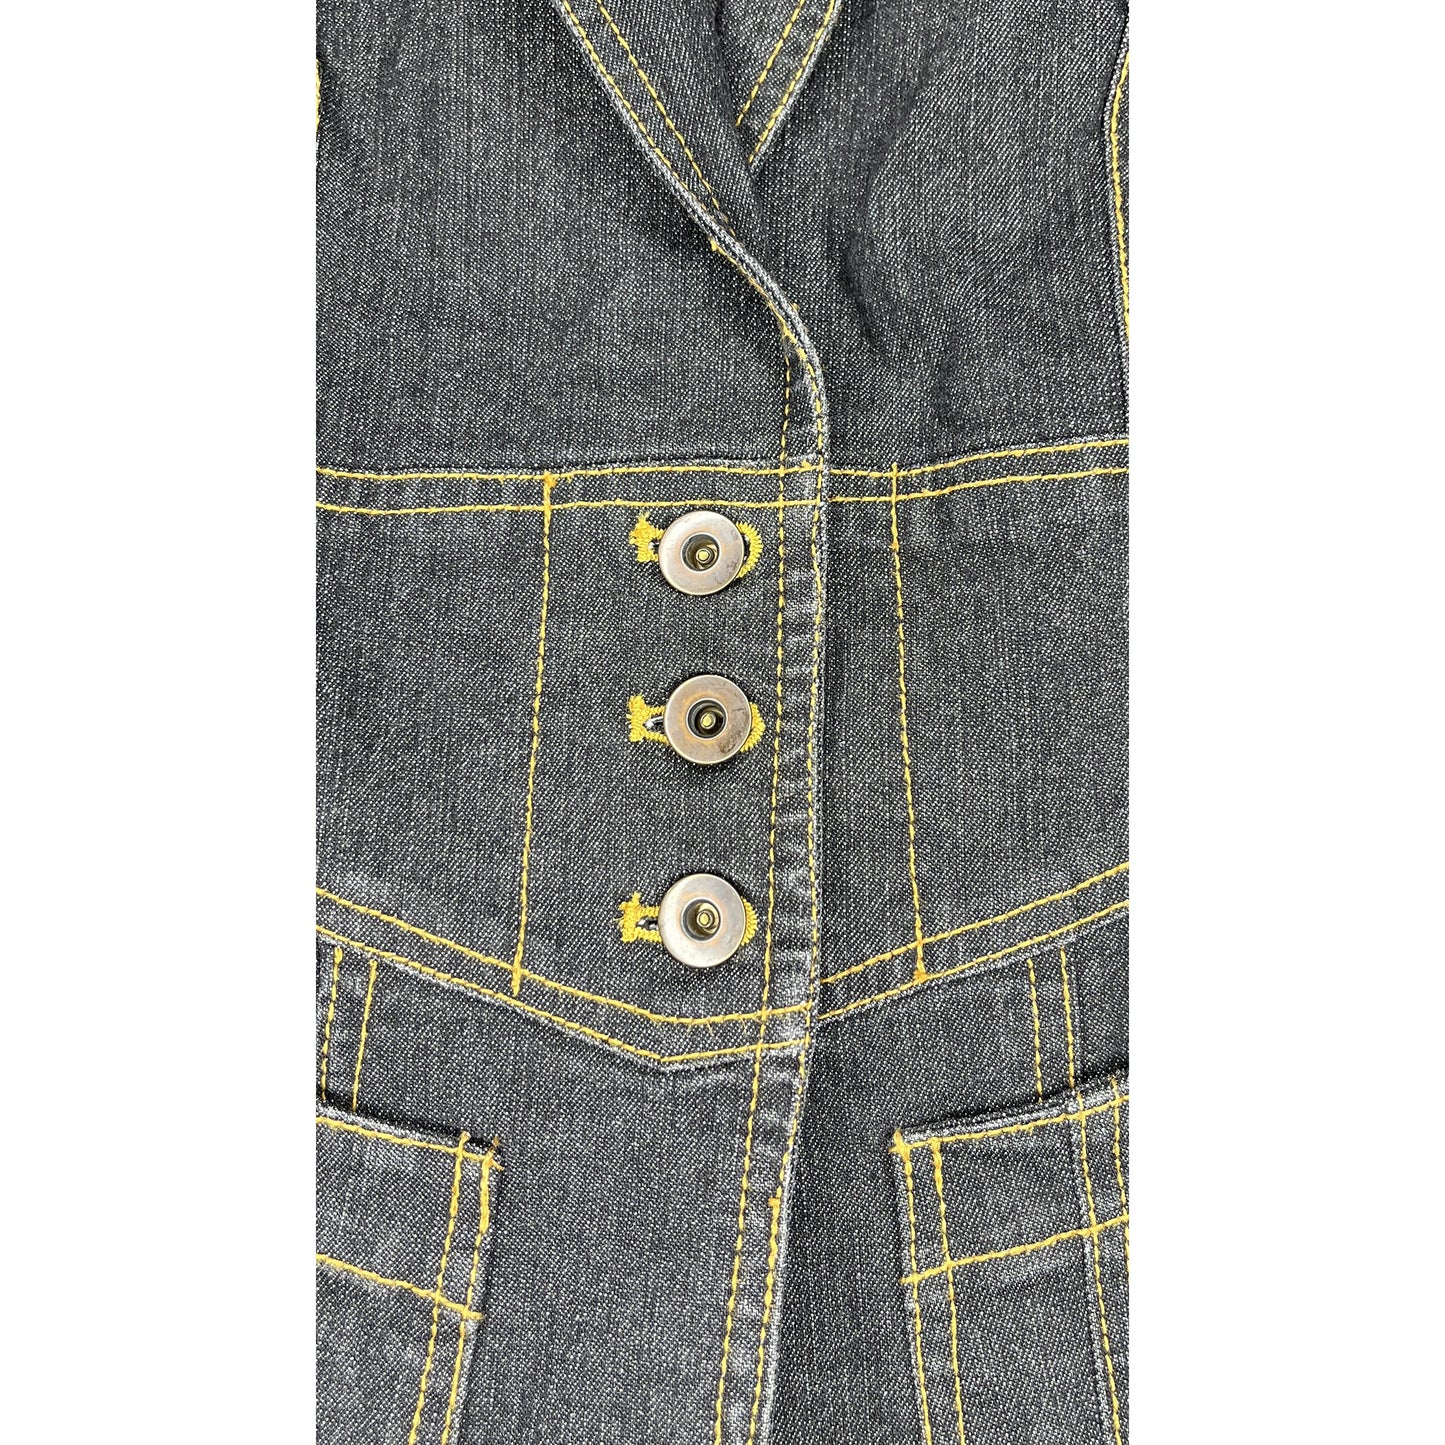 Cache Denim Jacket 3-Button Detail Rust Stitching Black Size 8 SKU 000425-1